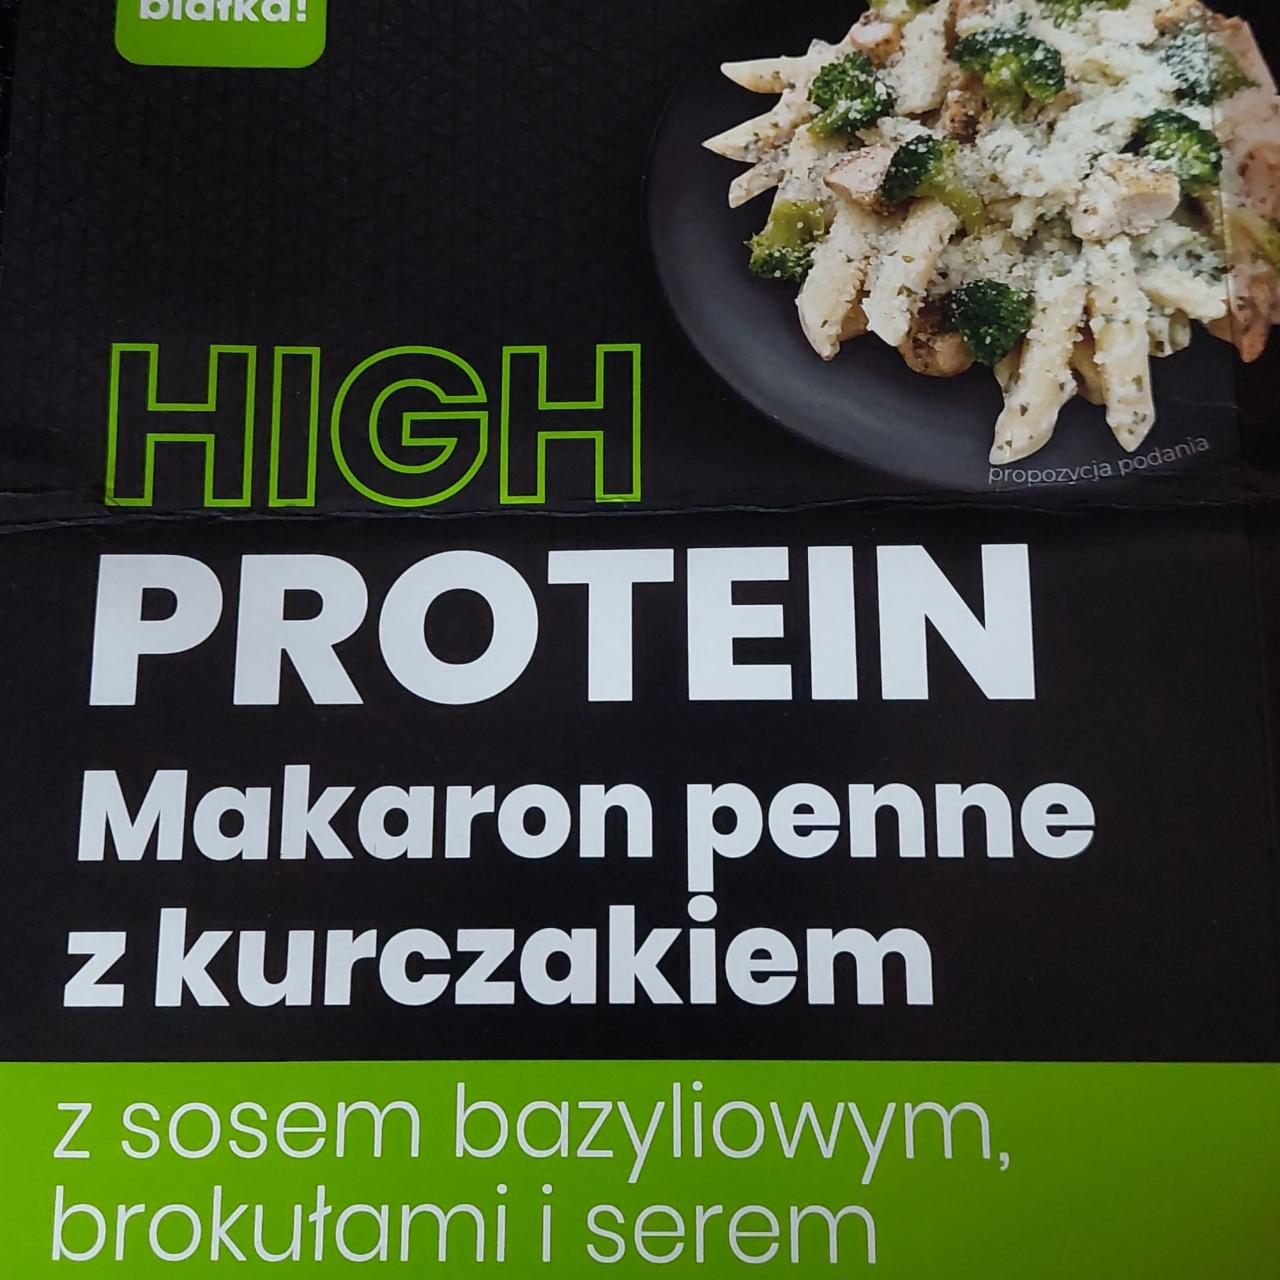 Zdjęcia - High Protein Makaron Penne z kurczakiem z sosem bazyliowym, brokułami i serem Virtu